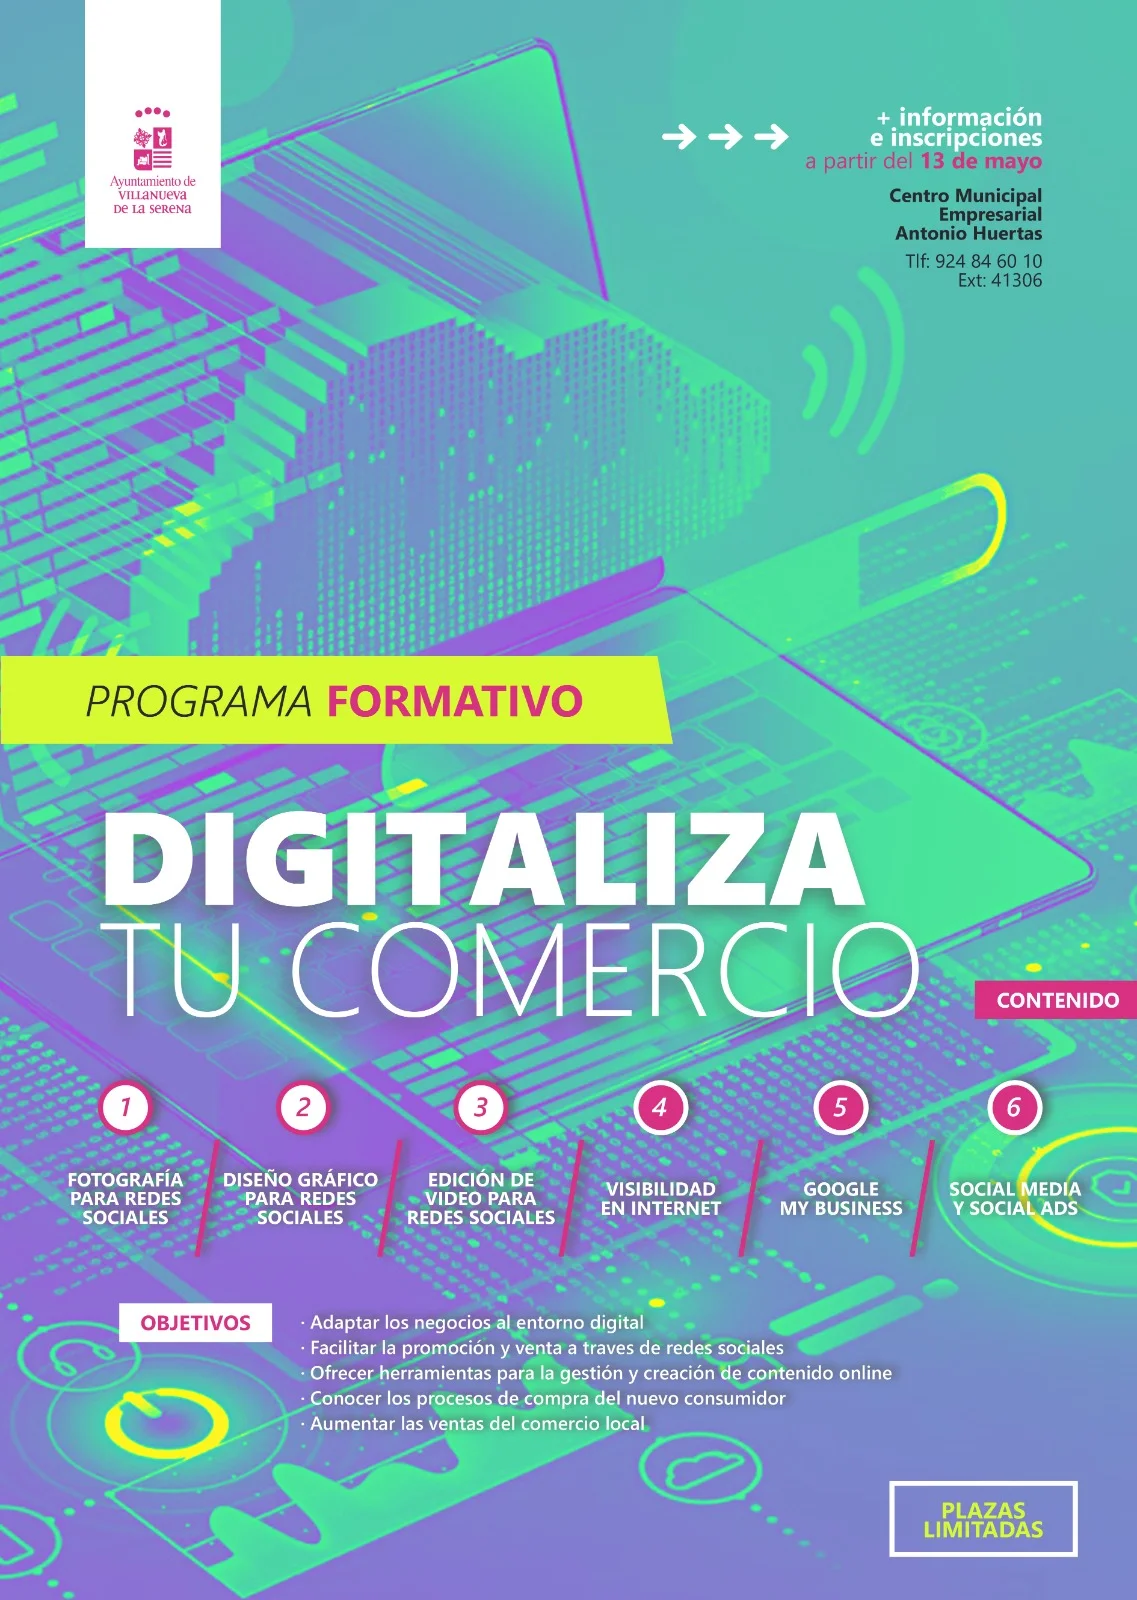 Comercio organiza el programa formativo «Digitaliza tu comercio» para adaptarse a las nuevas tendencias de consumo